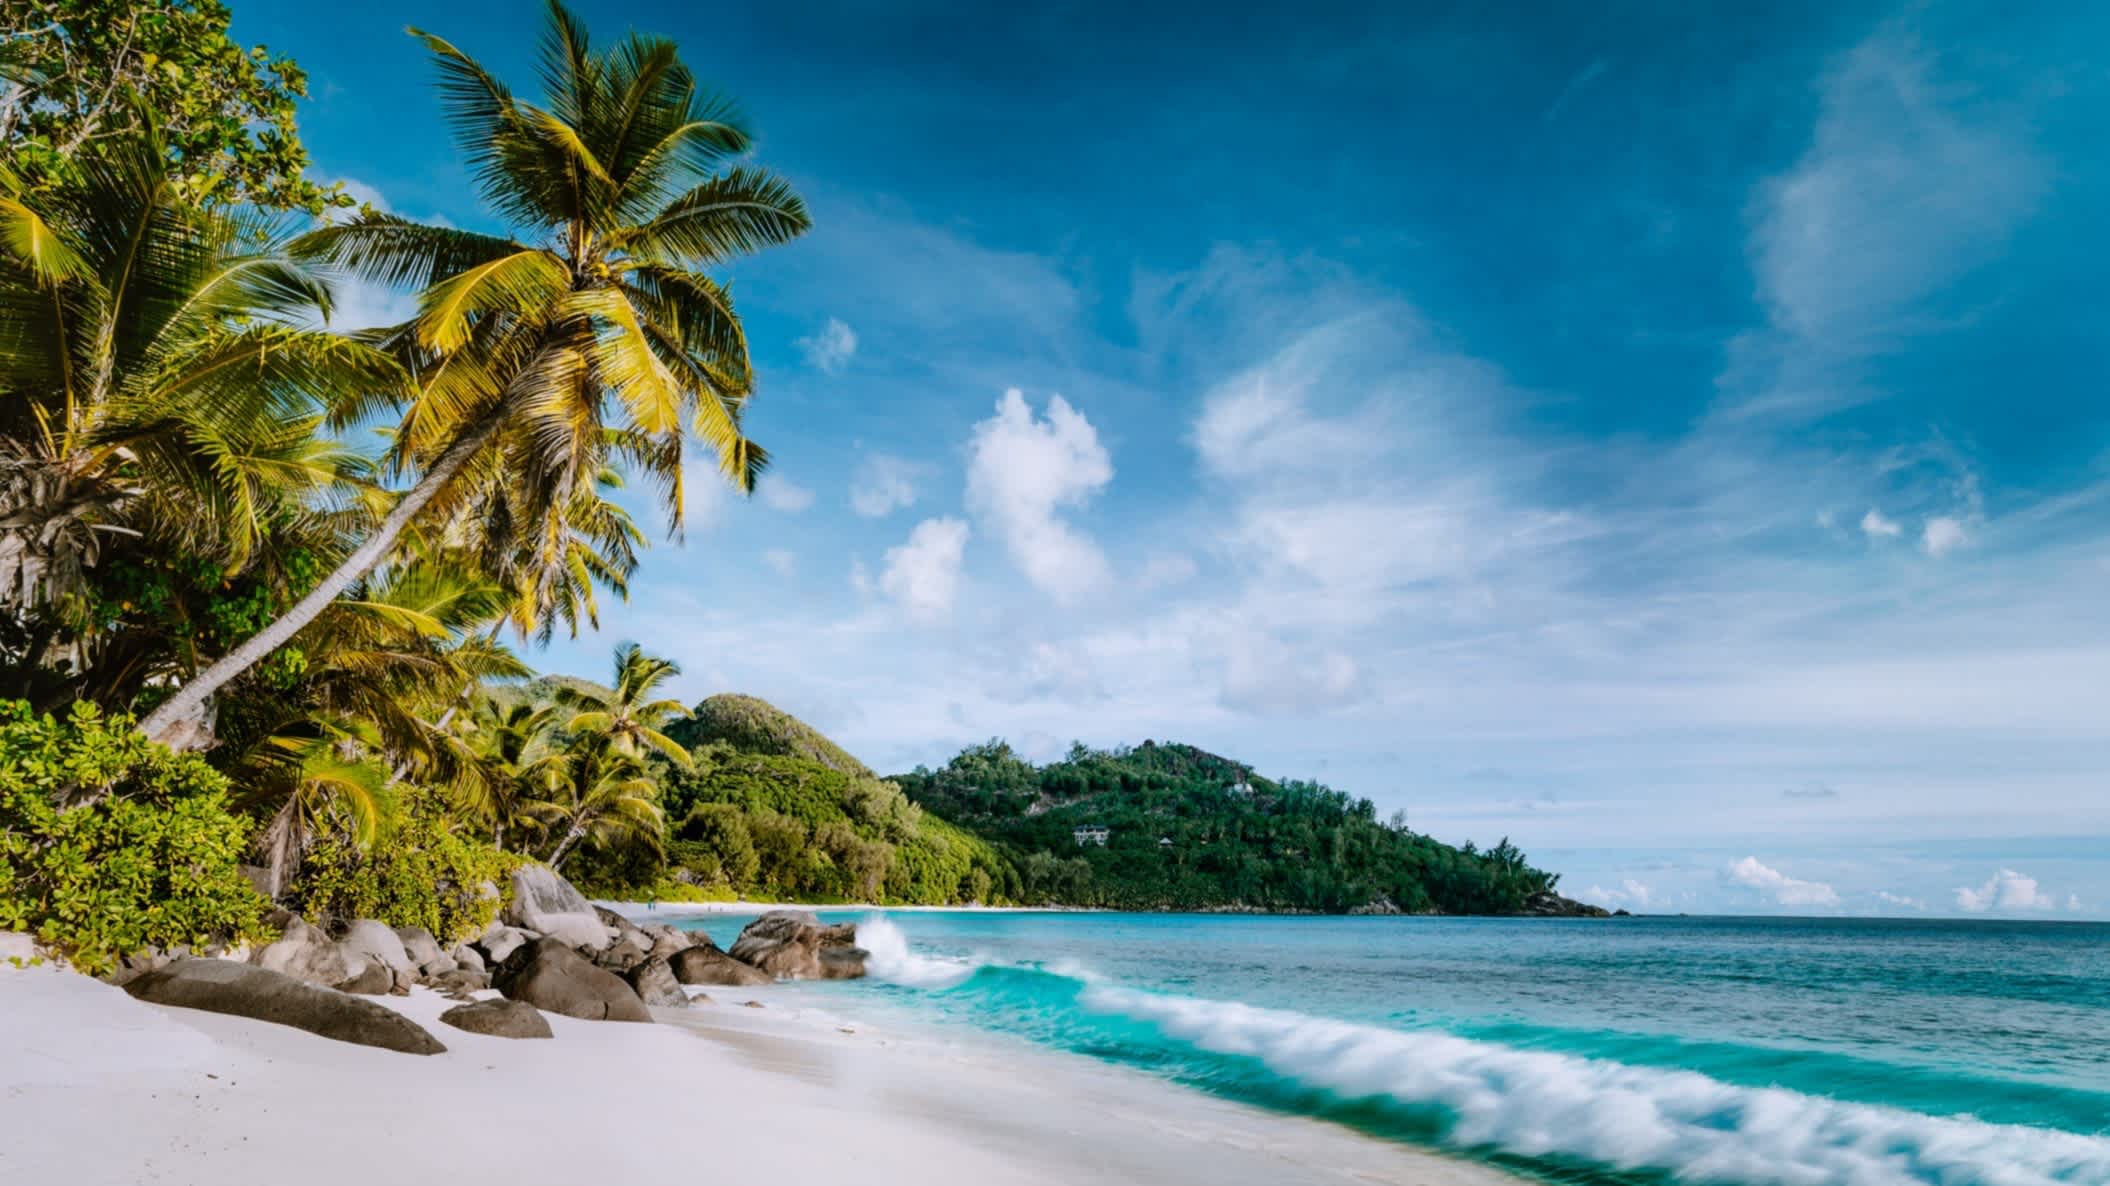 Anse Intendance Strand mit Kokospalmen, weißem Sand, Granitfelsen und blauem, welligem Meer auf der Insel Mahé, Seychellen.